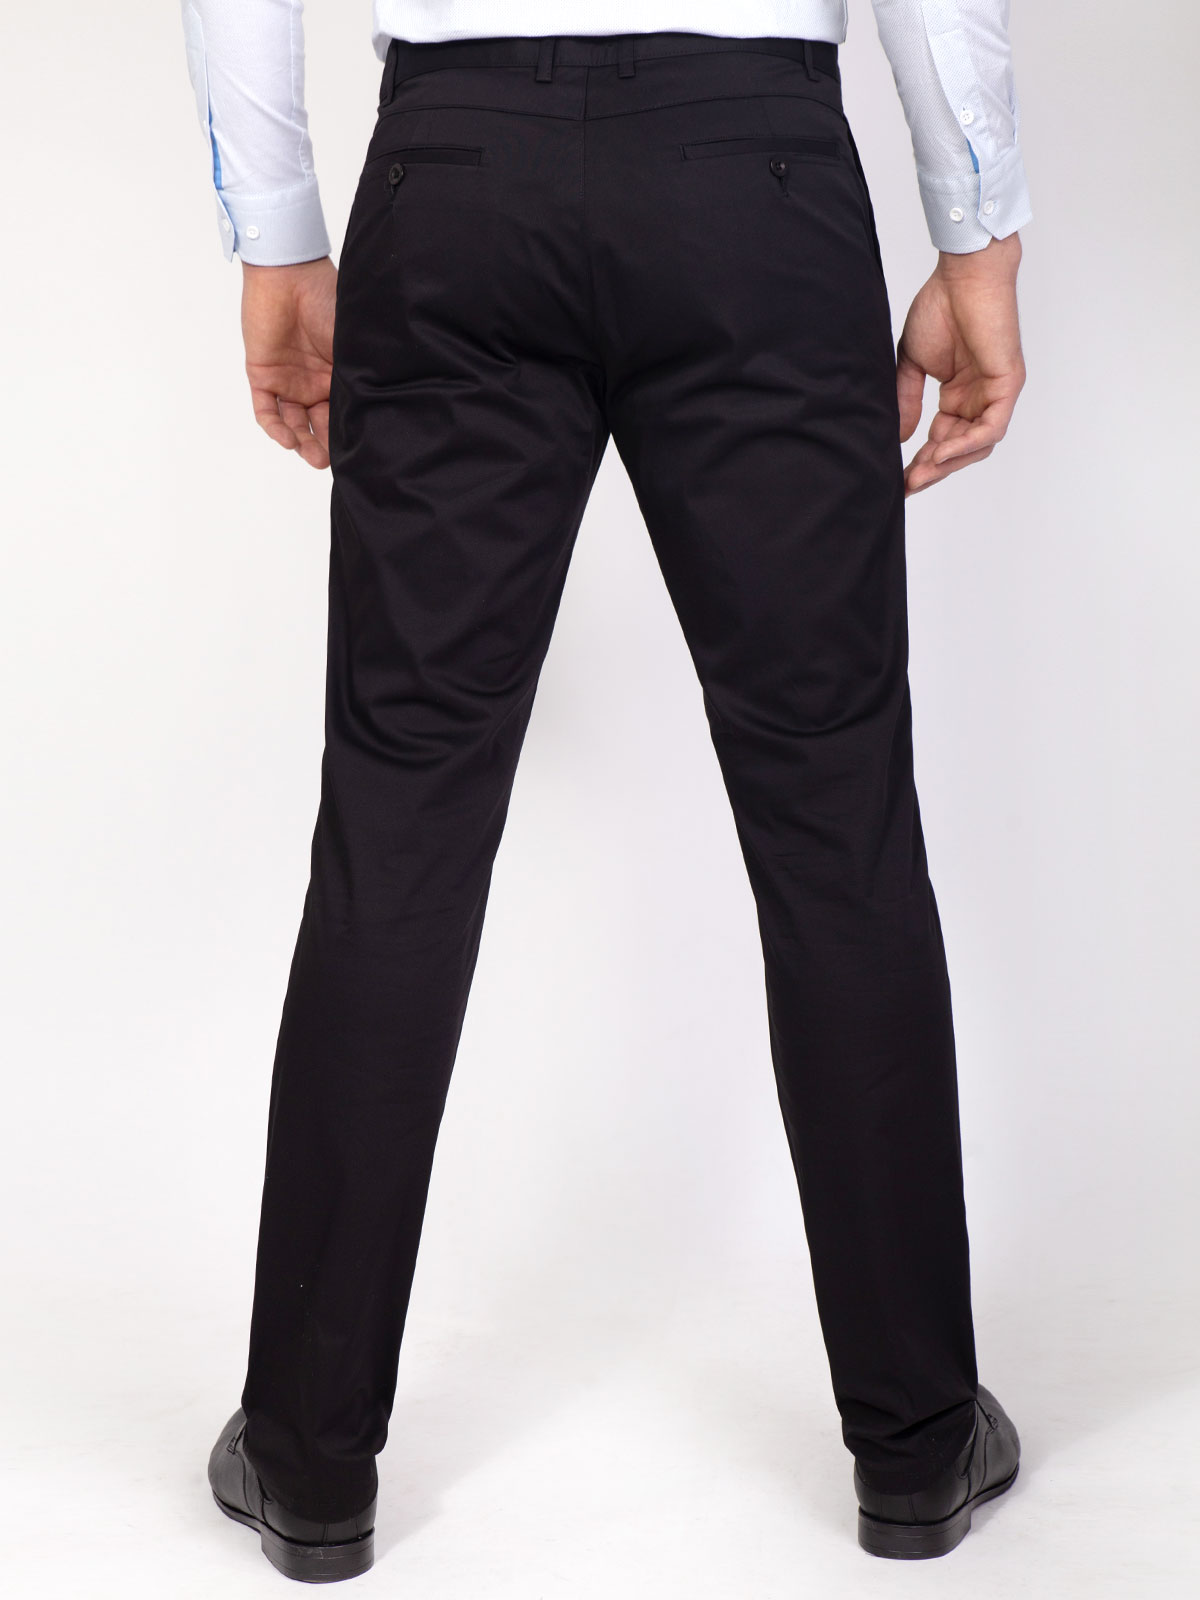 Σπορ κομψό παντελόνι σε μαύρο χρώμα - 63190 € 44.43 img3